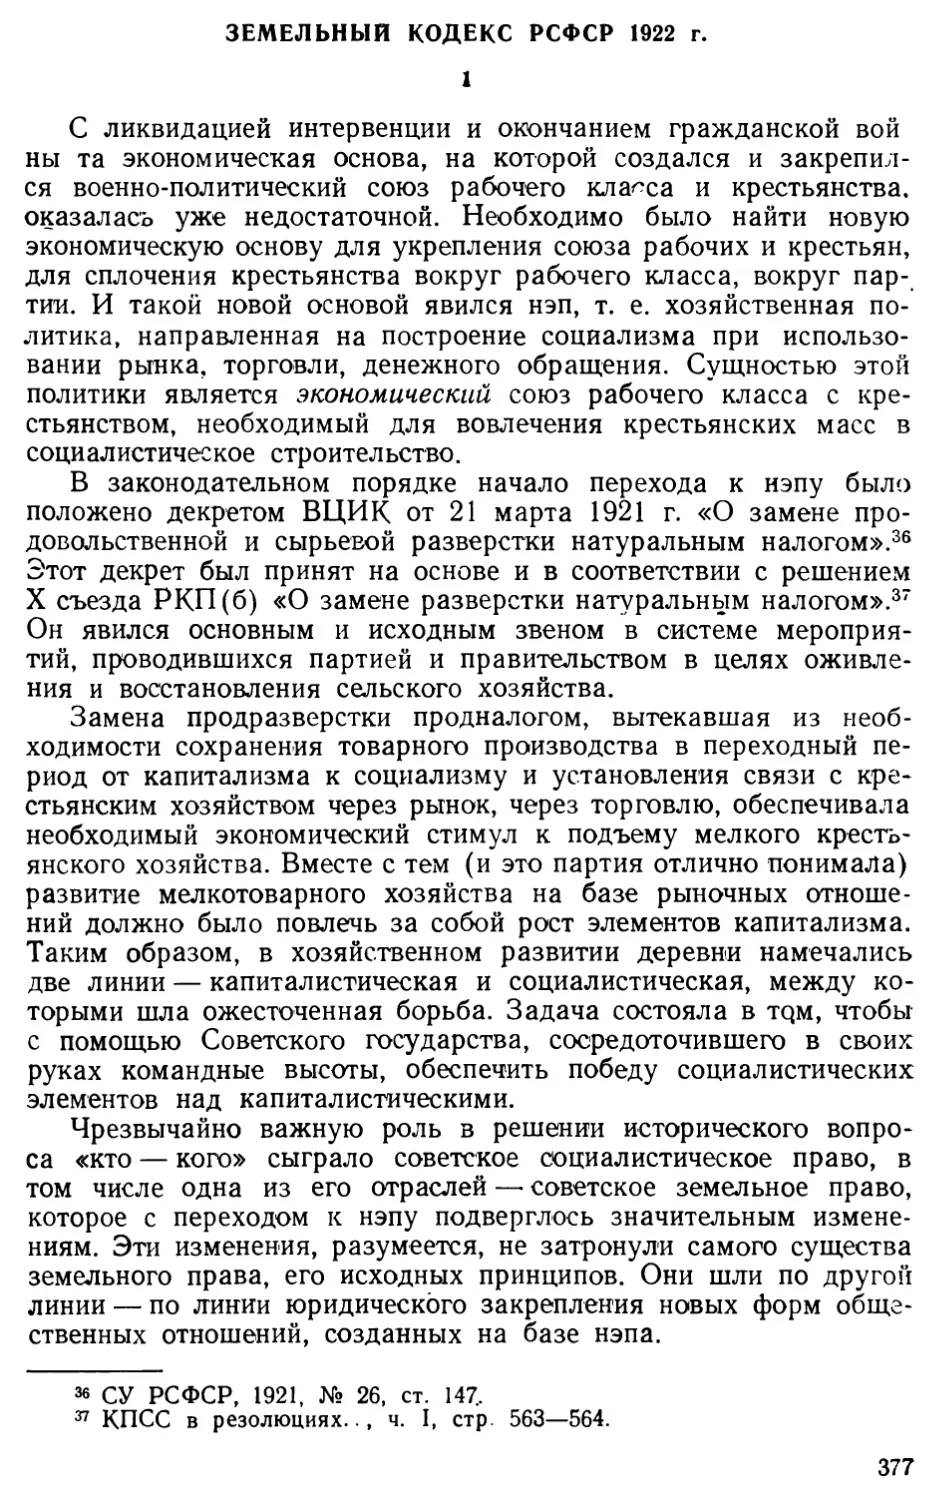 Земельный кодекс РСФСР 1922 г.